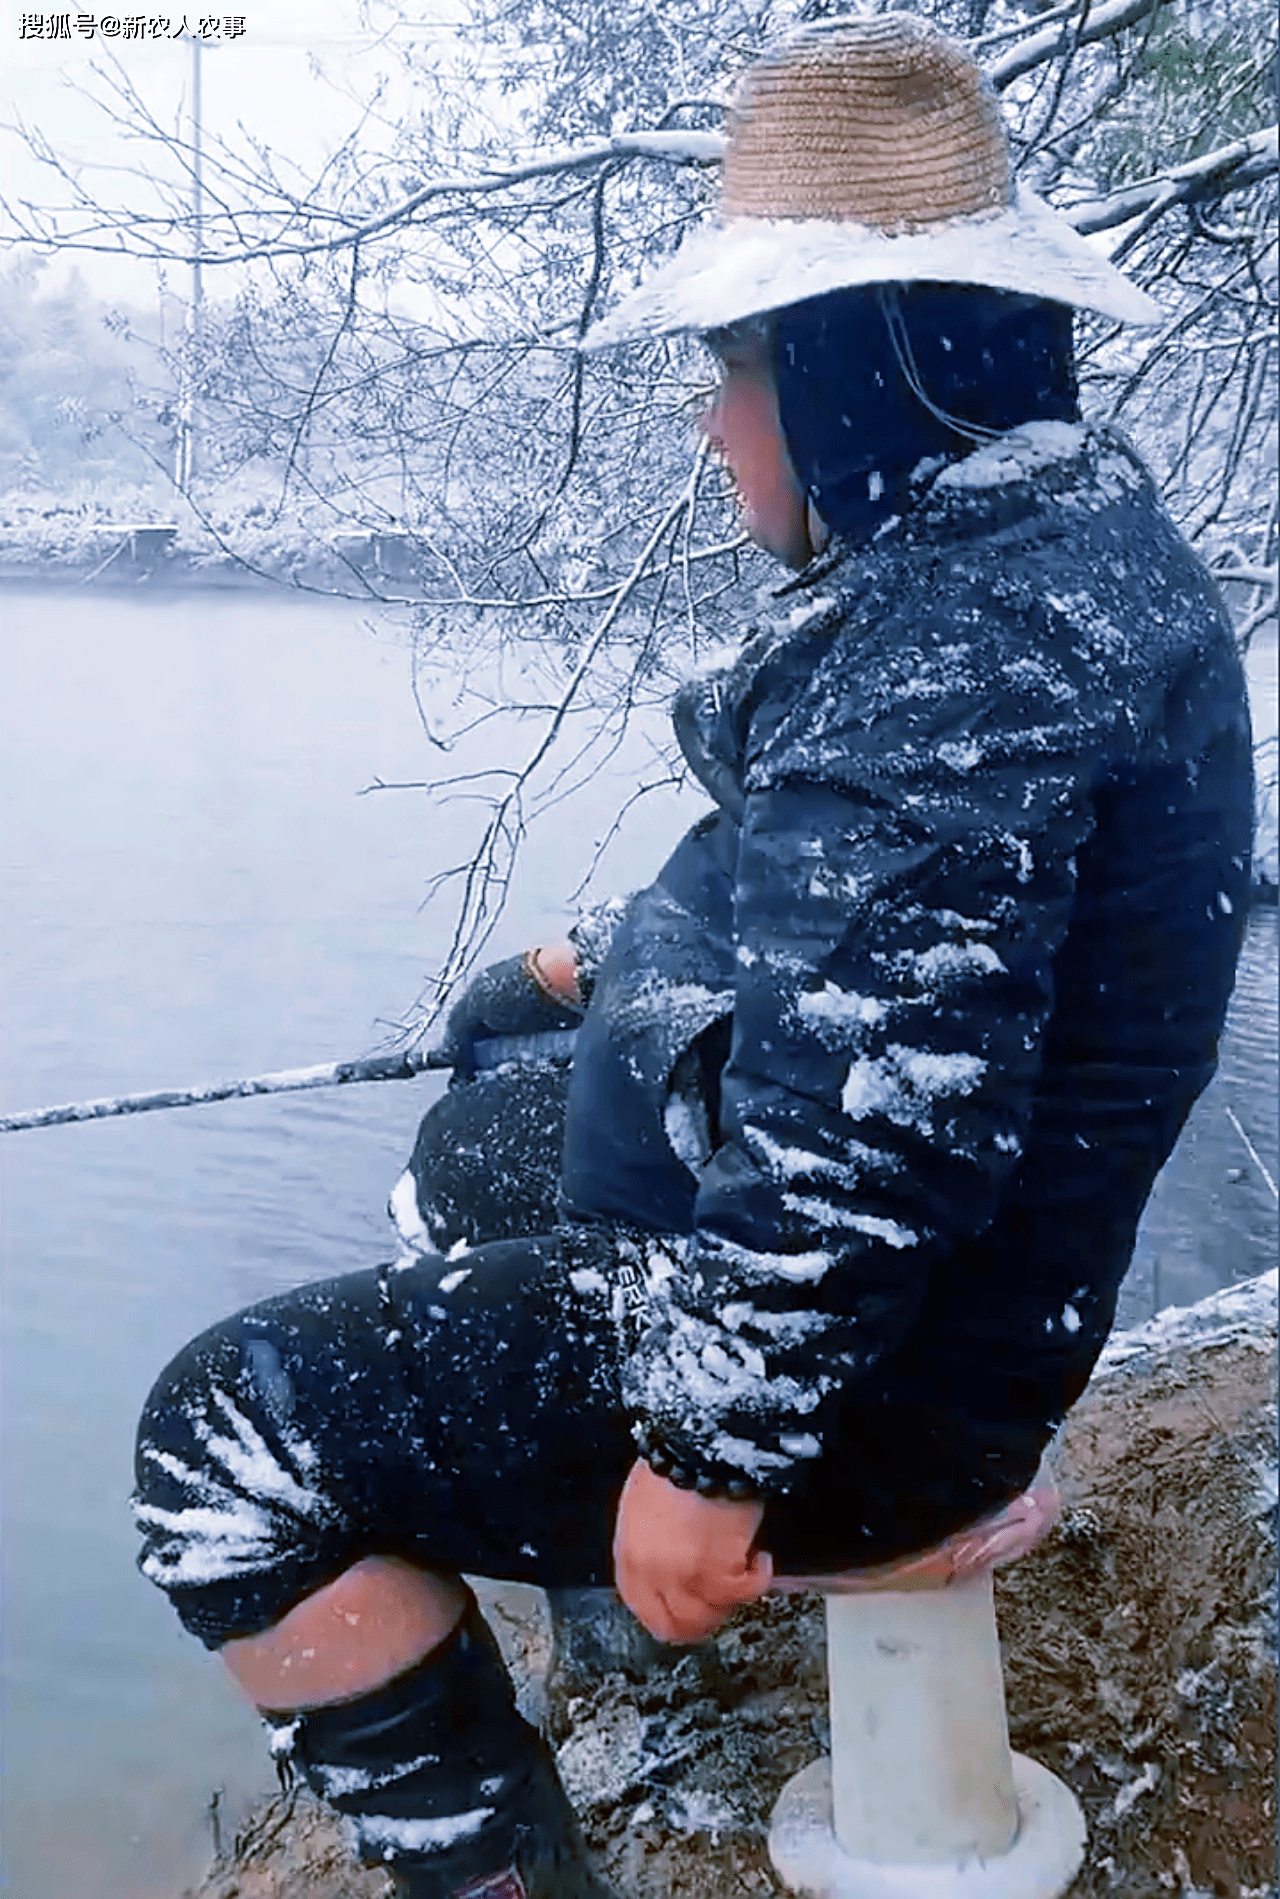 男子雪中钓鱼的场面被旁边的人记录了下来,随着还发布到了个人社交